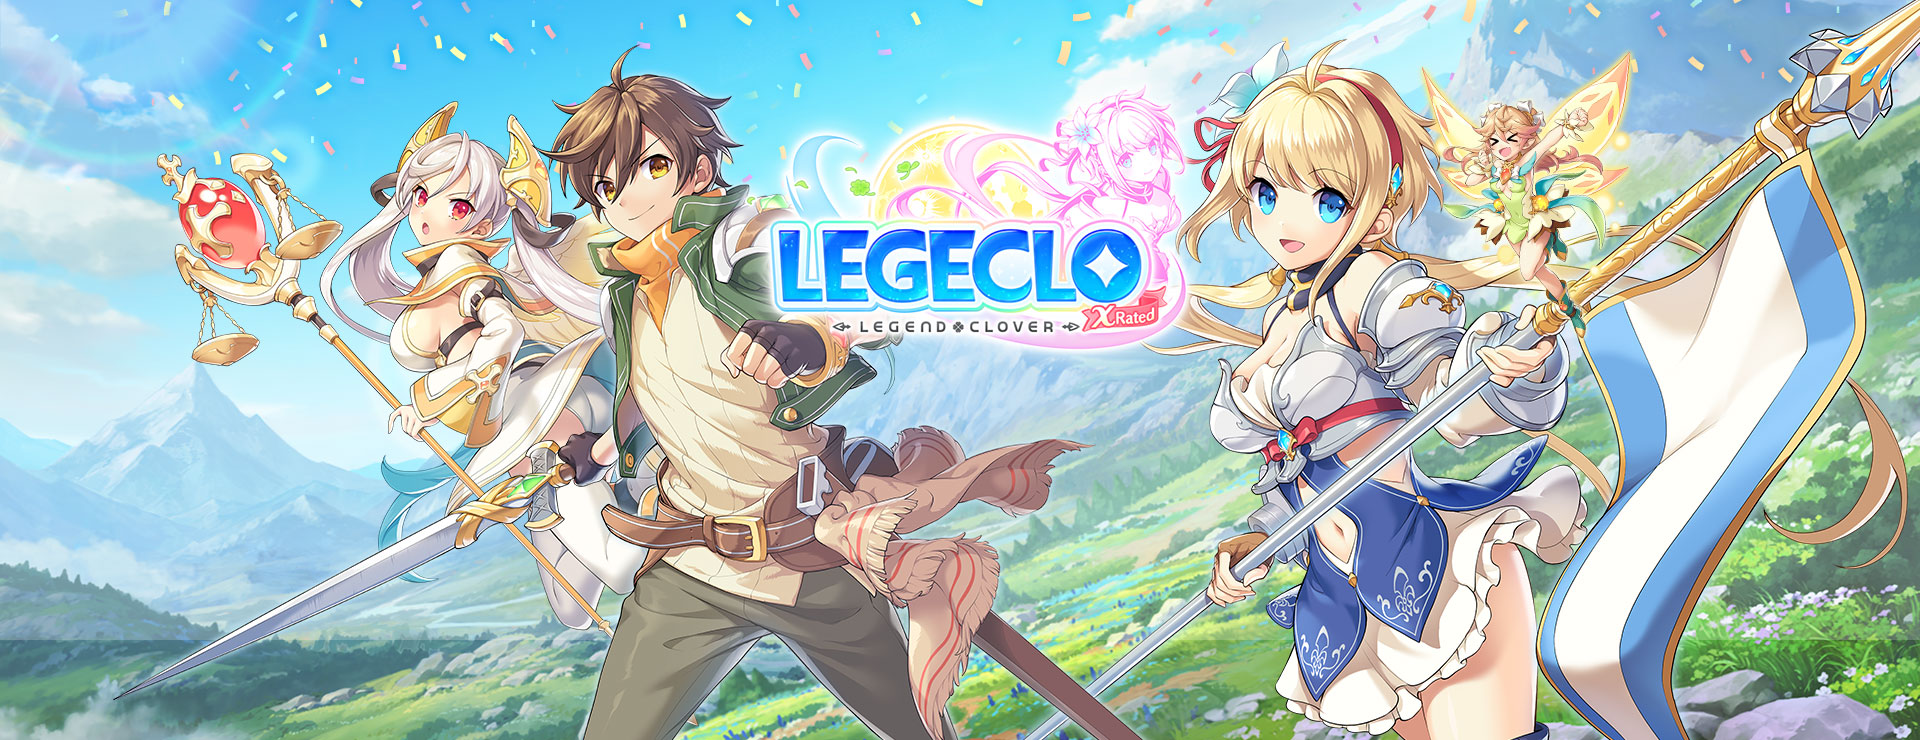 Legeclo: Legend Clover X Rated - Basé sur le Tour RPG Jeu